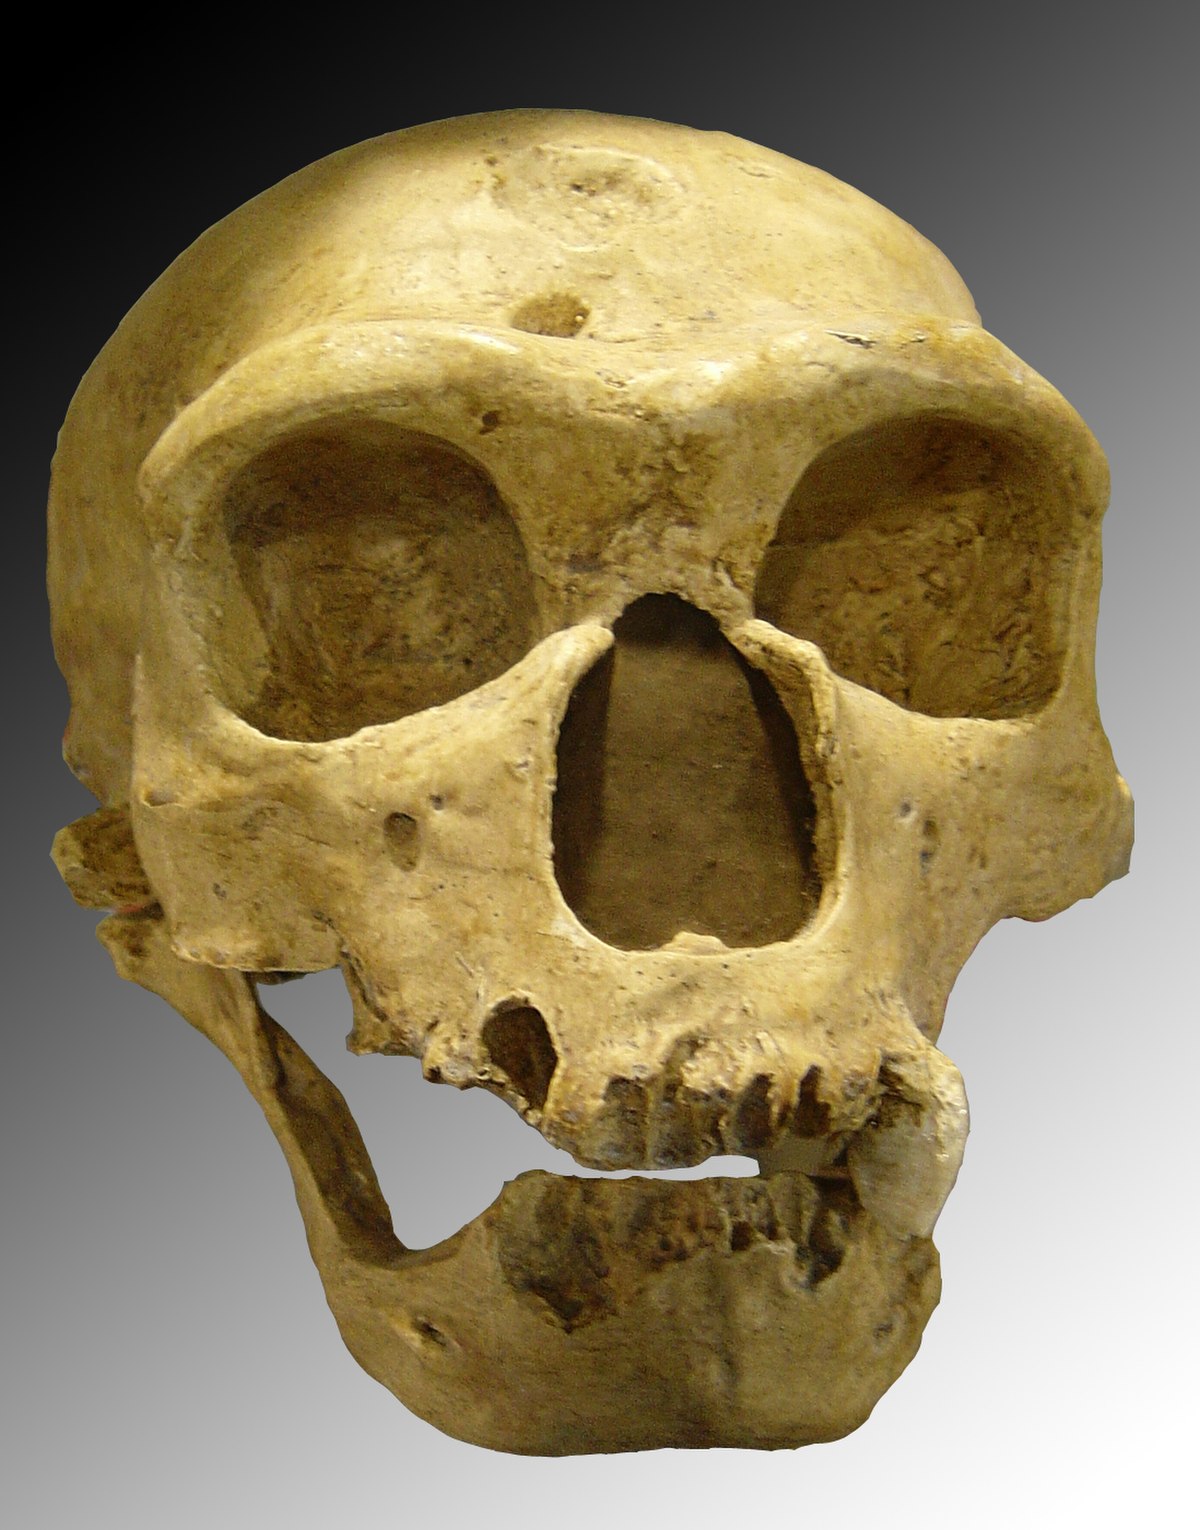  Crâne de Néandertalien : l'Homme de la Chapelle-aux-Saints.